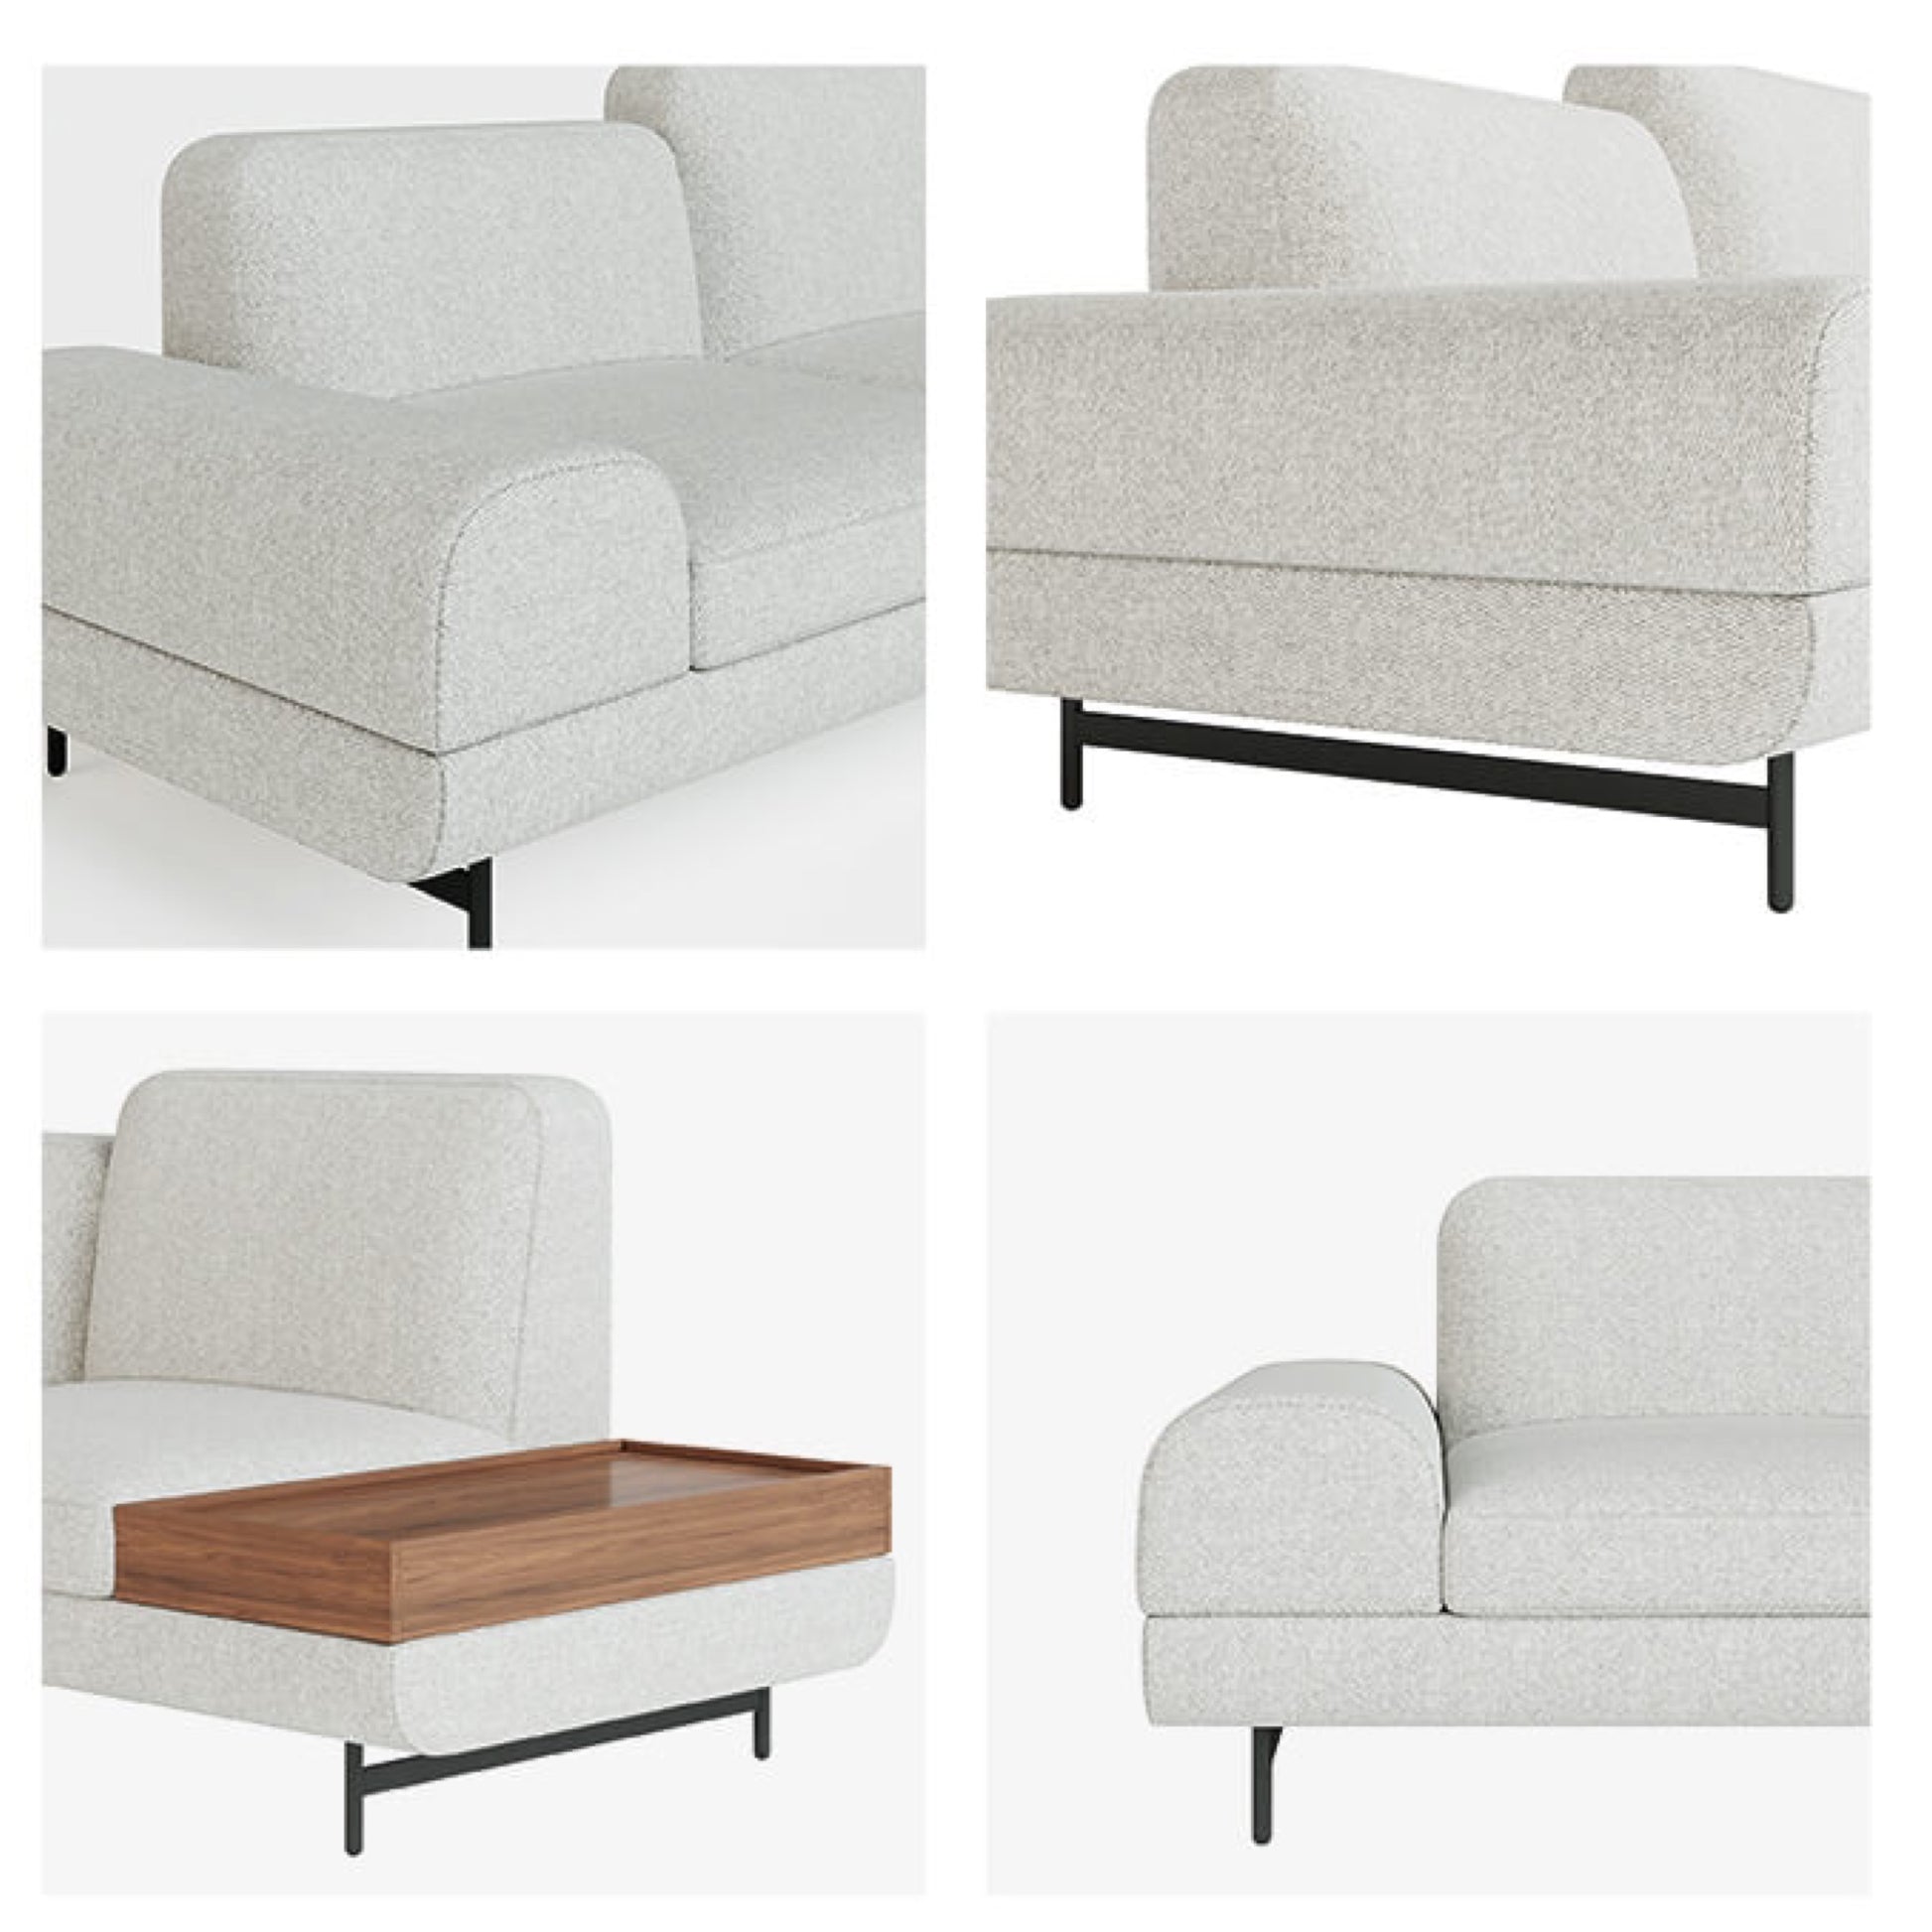 furniture-sofa-coffee table-comfort-livingroom